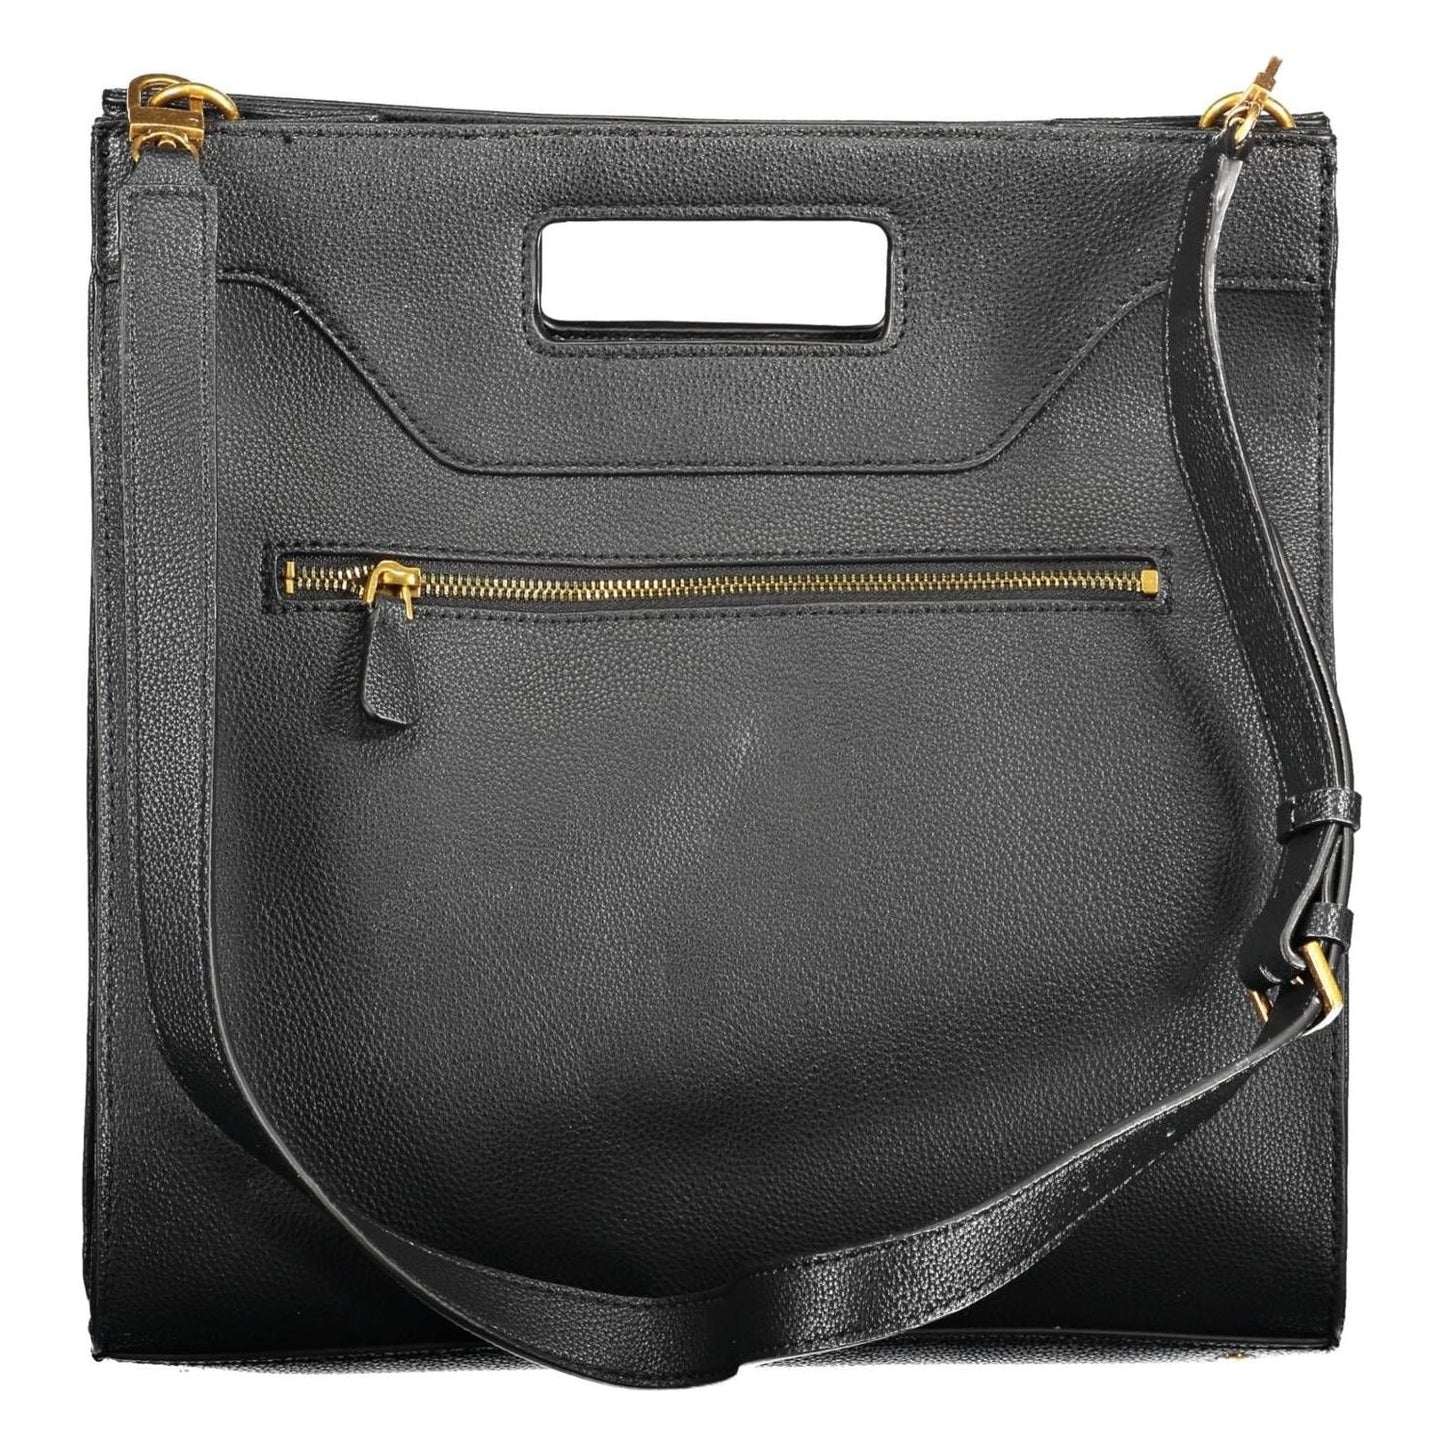 Guess Jeans | Chic Black Handbag with Contrasting Details| McRichard Designer Brands   